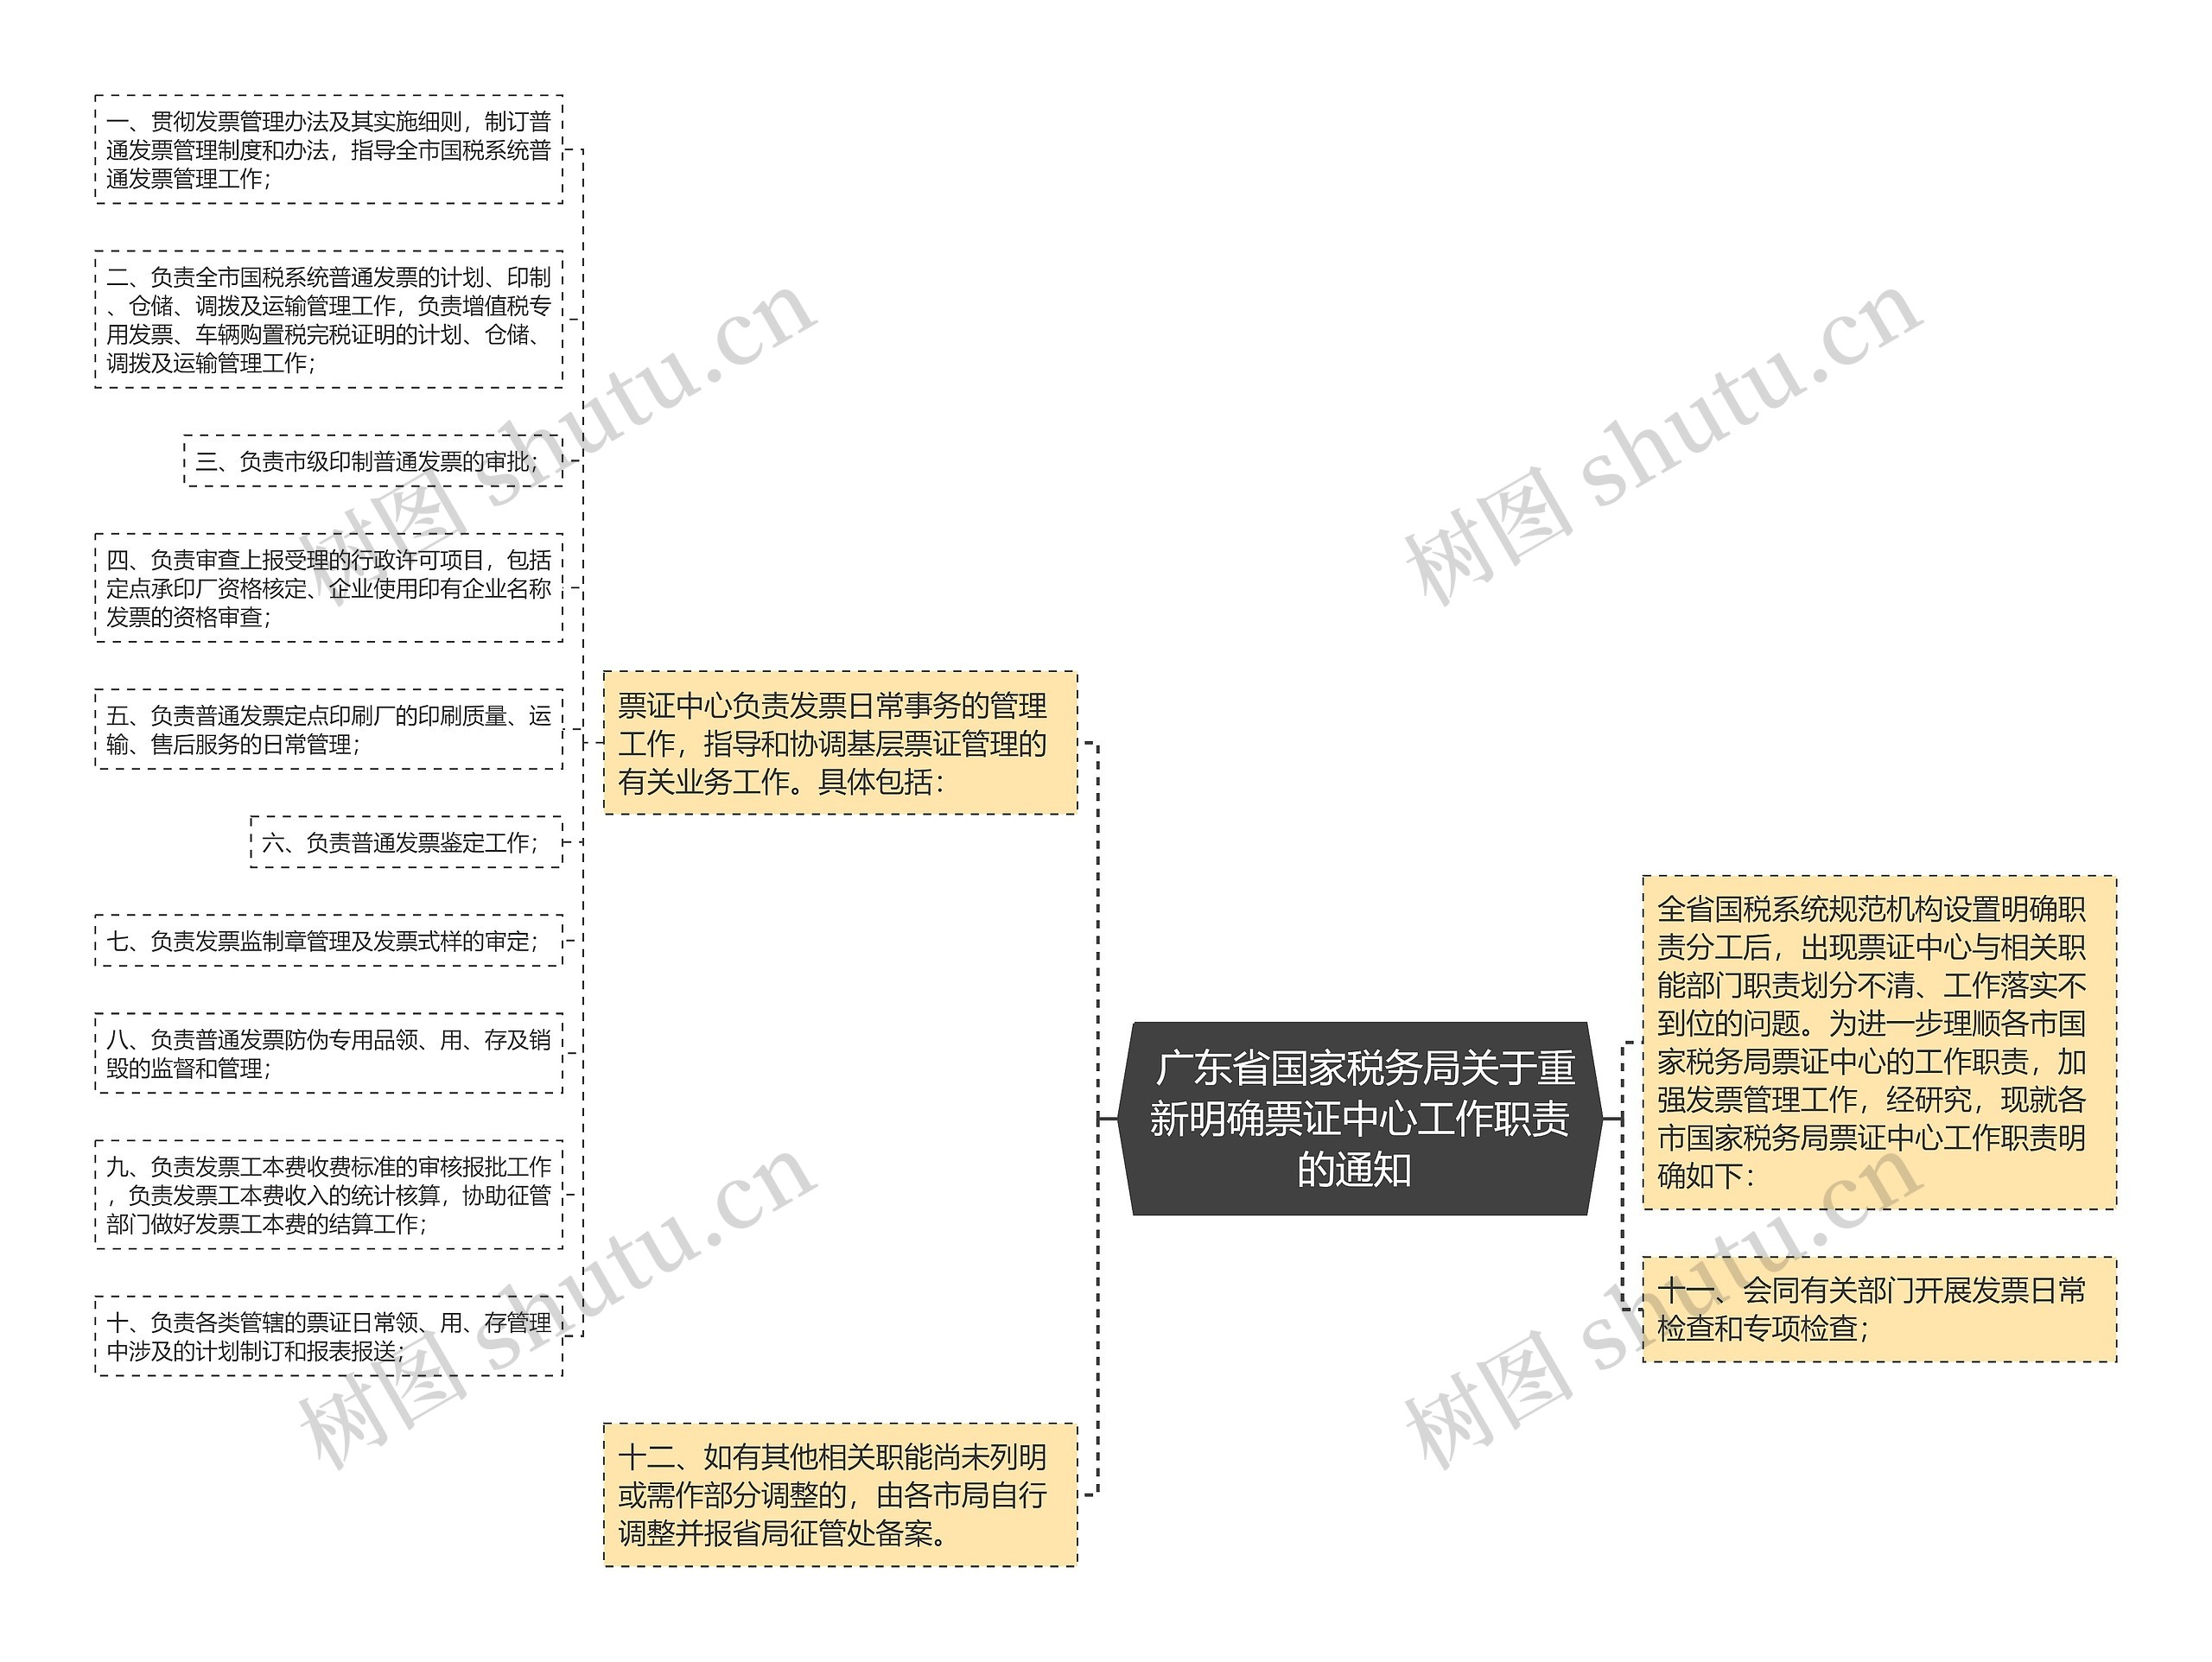  广东省国家税务局关于重新明确票证中心工作职责的通知 思维导图